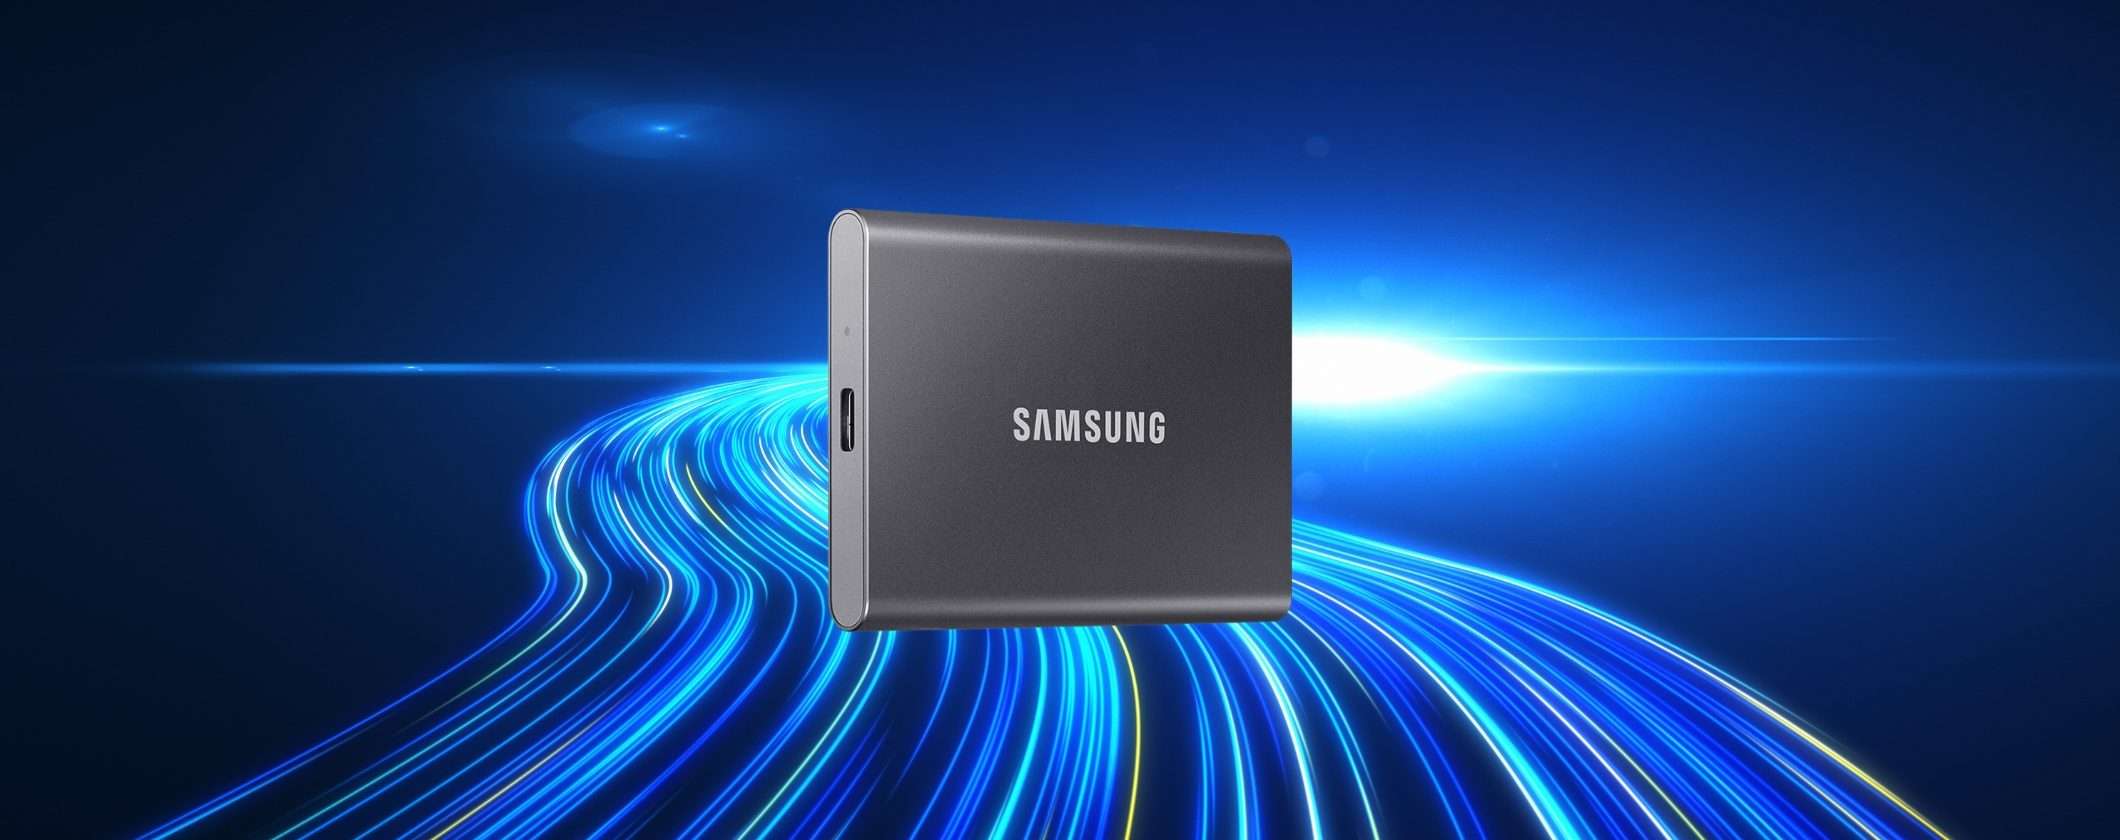 SSD Samsung 1TB: velocità spettacolari, ottime per il GAMING